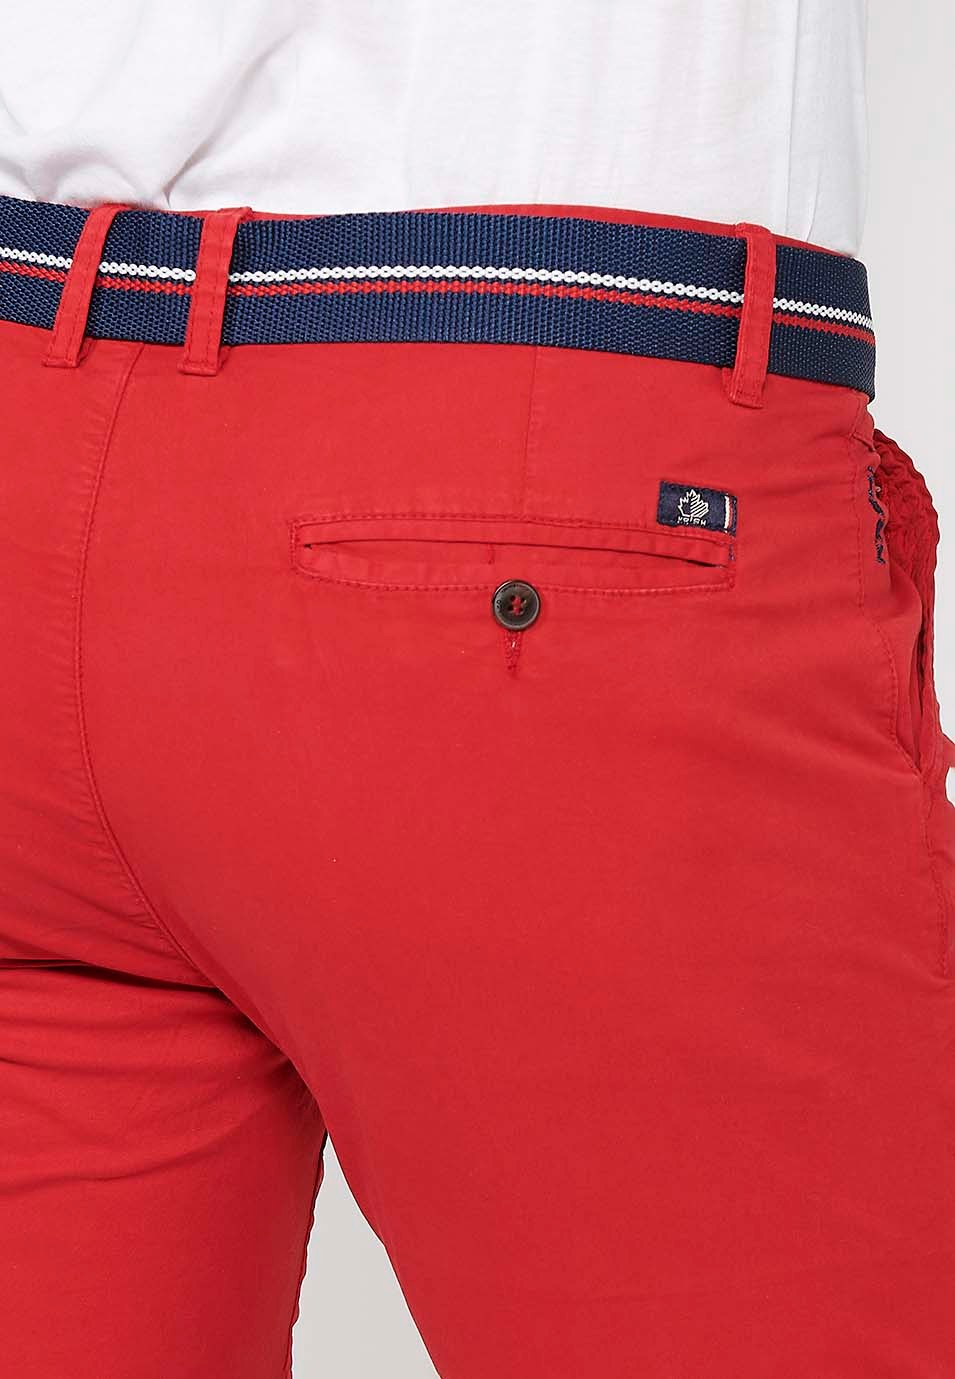 Pantalons curts acabats en volta amb Tancament davanter amb cremallera i botó i cinturó de Color Roig per a Home 7